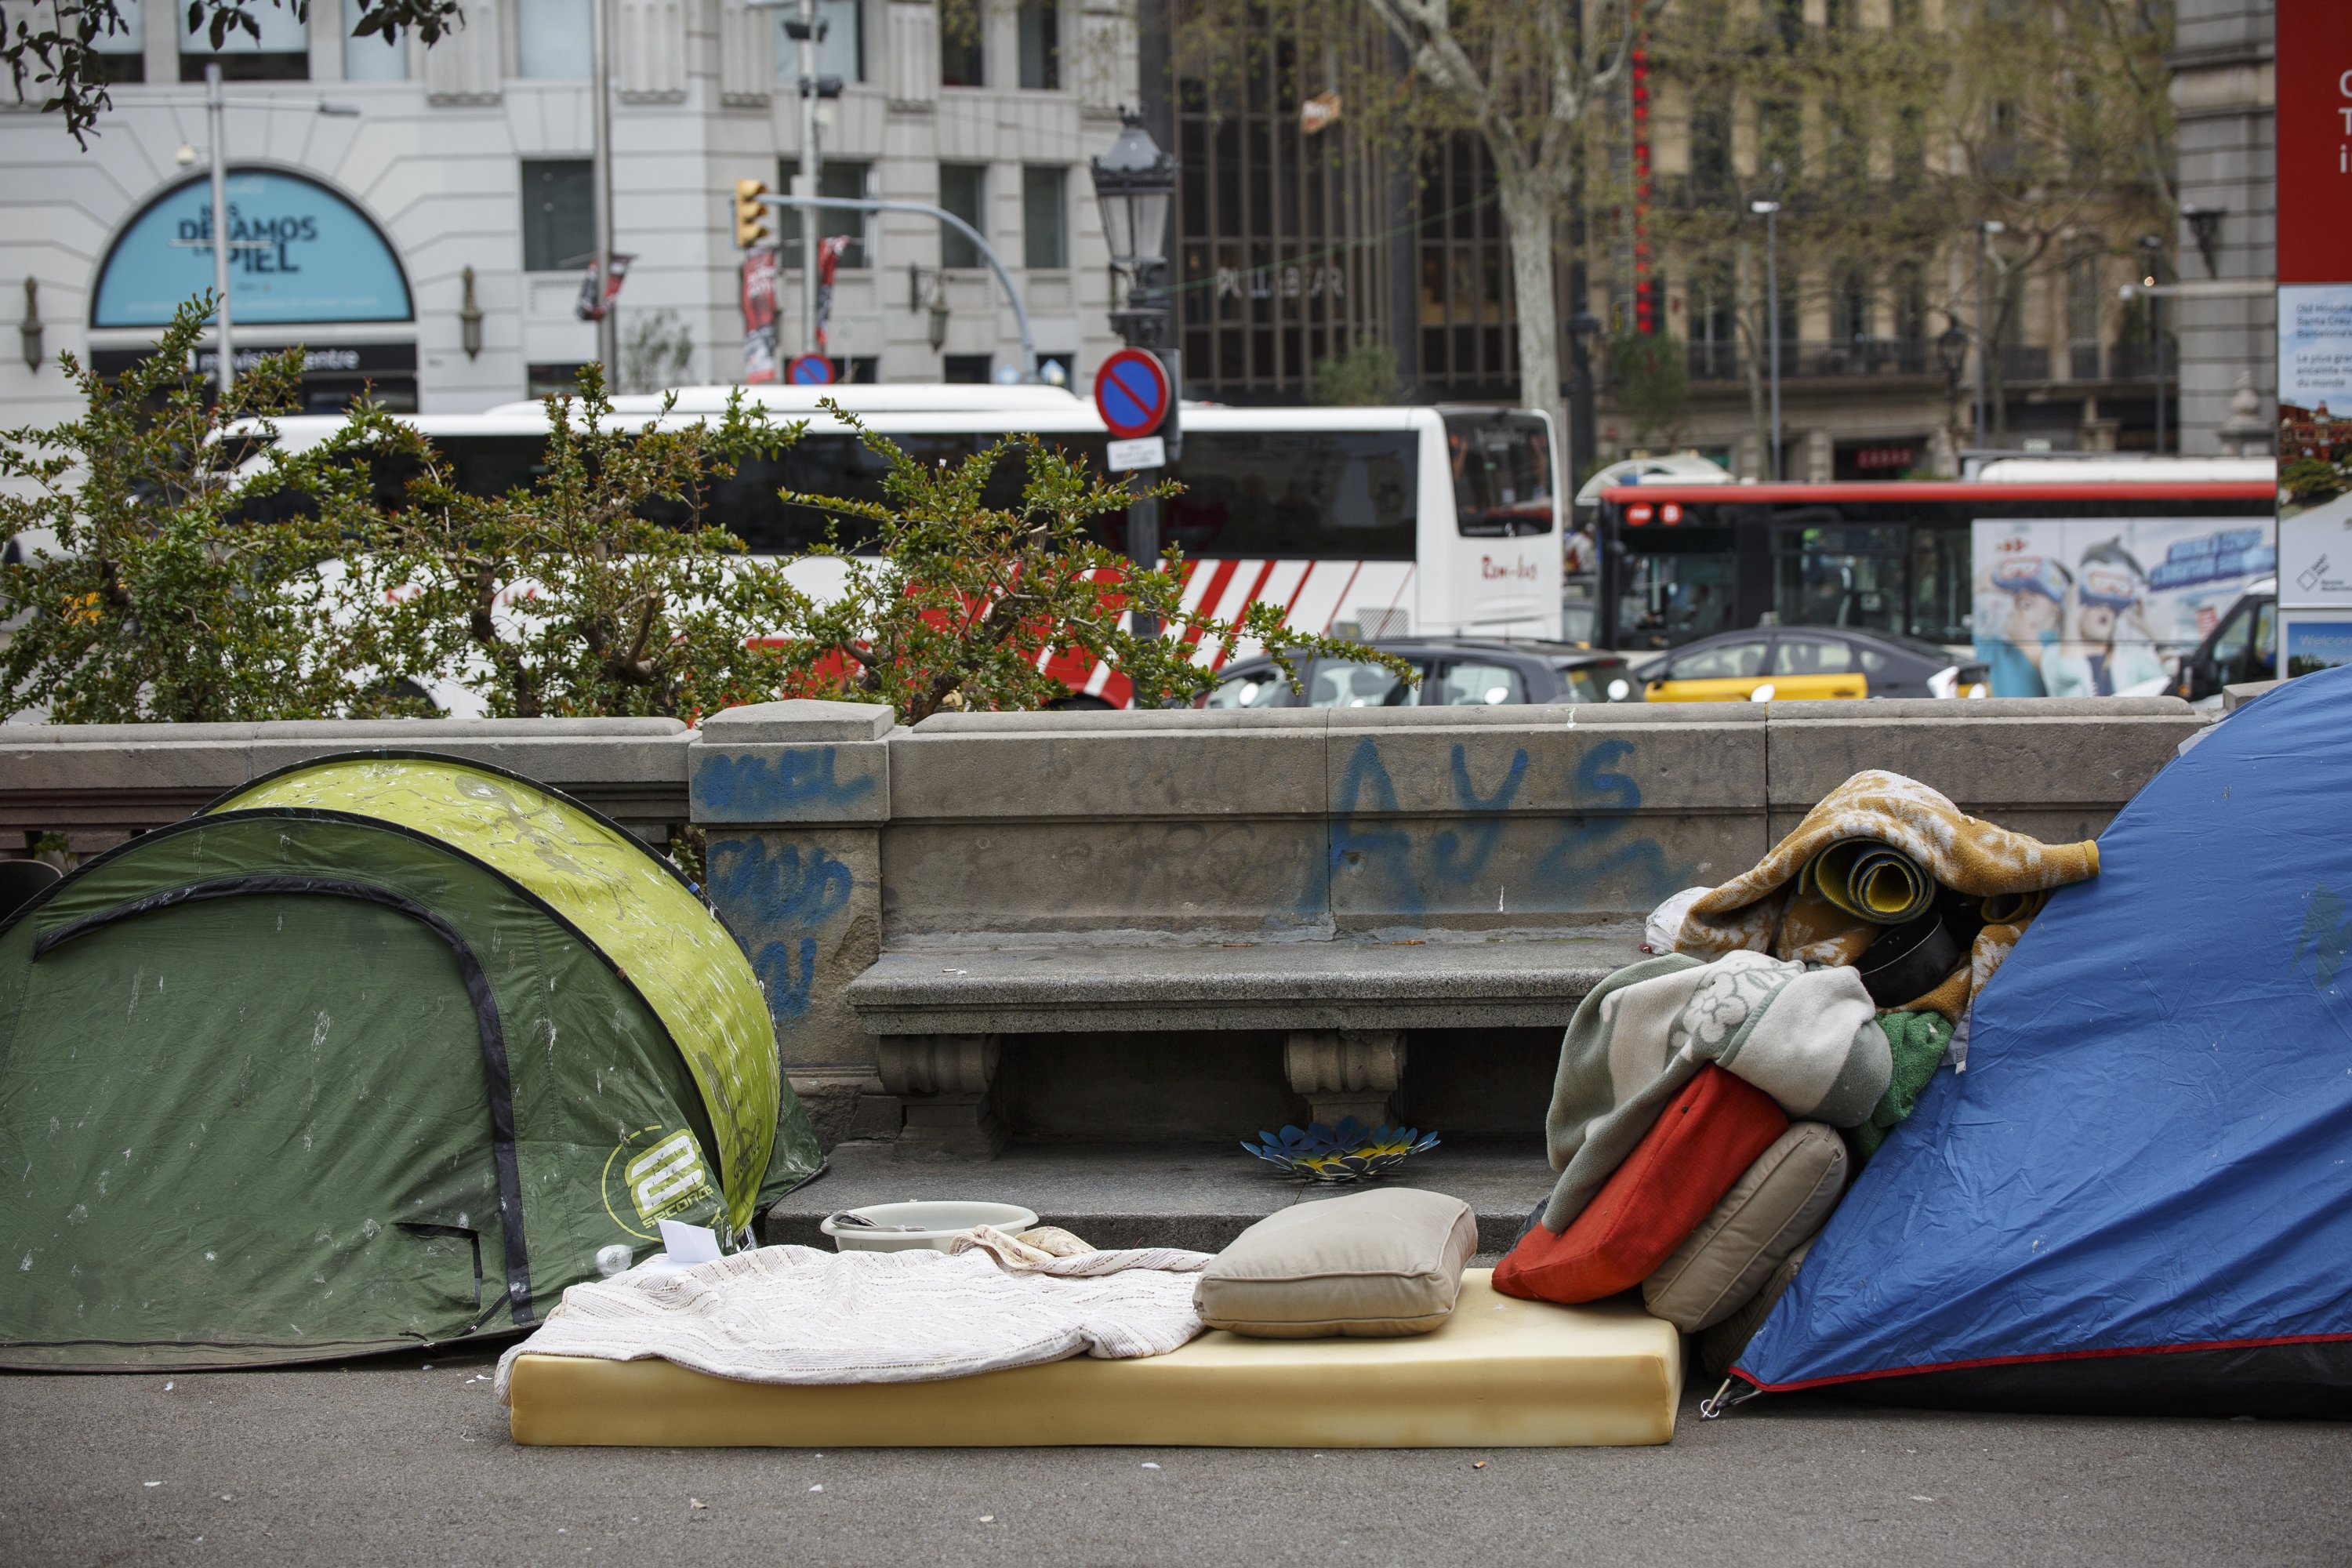 Crece el número de jóvenes sin hogar en Barcelona